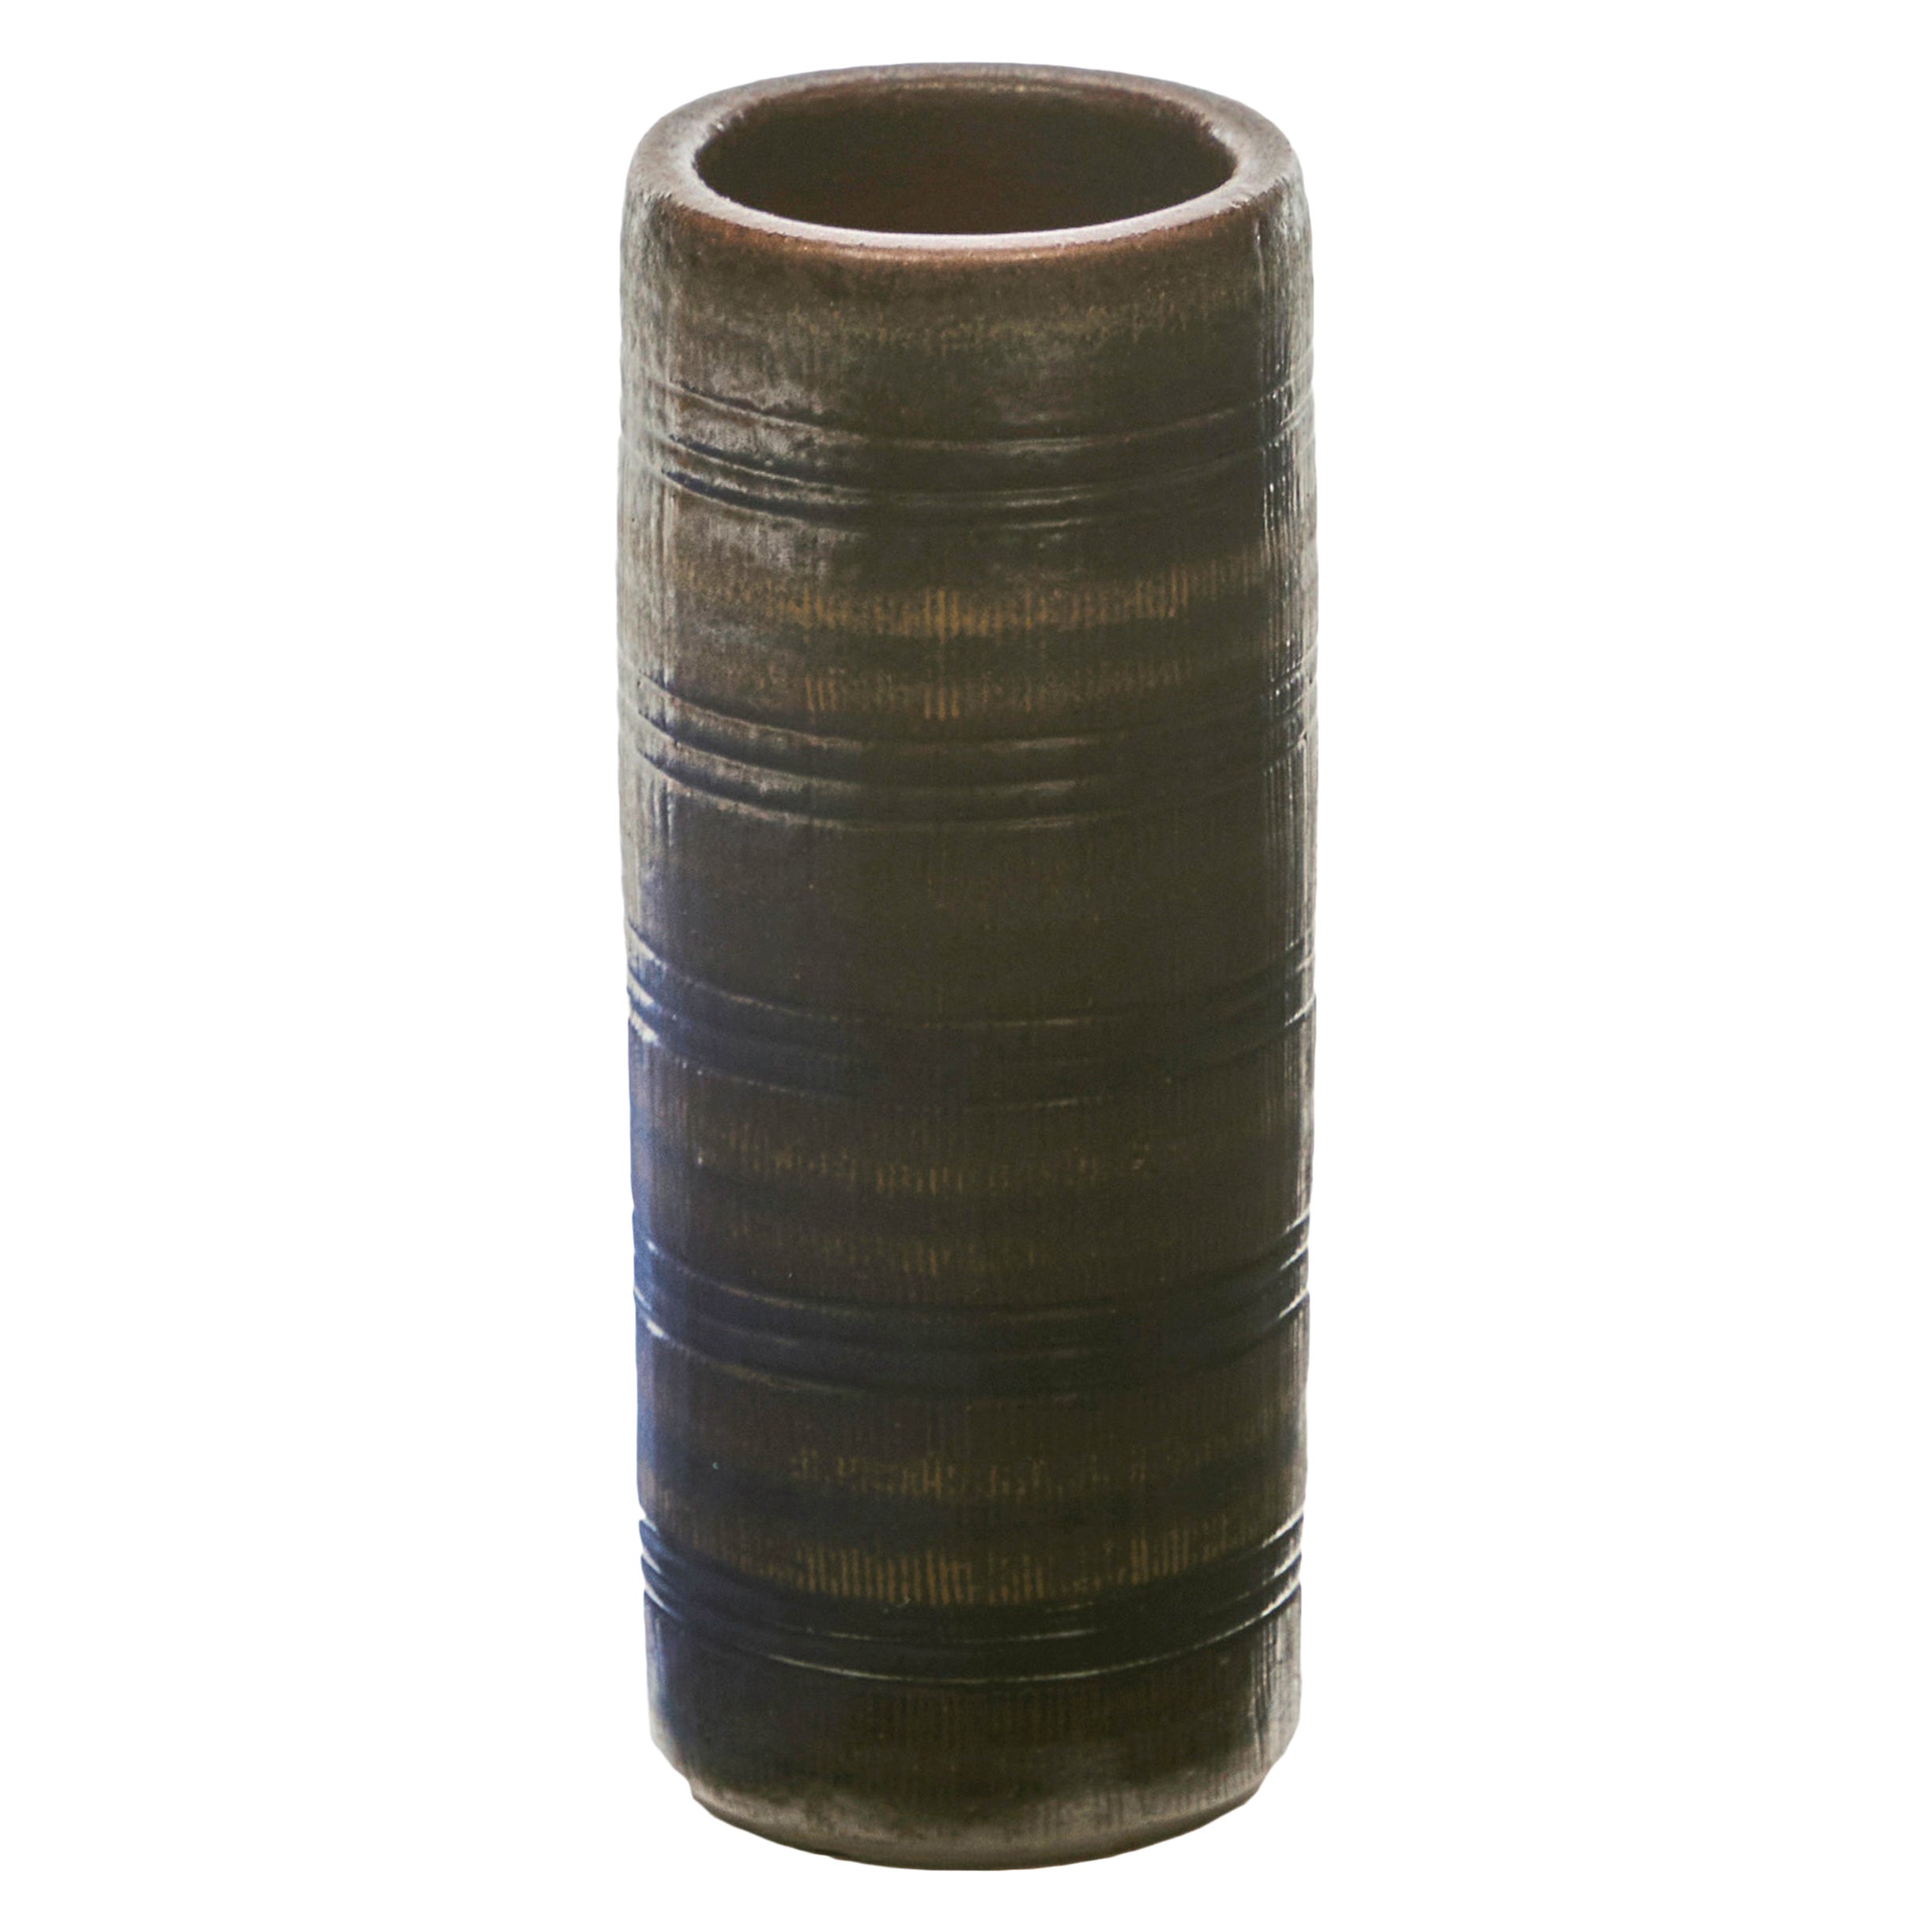 Wallåkra, Mid-Century Stoneware Vase, Sweden, 1960s